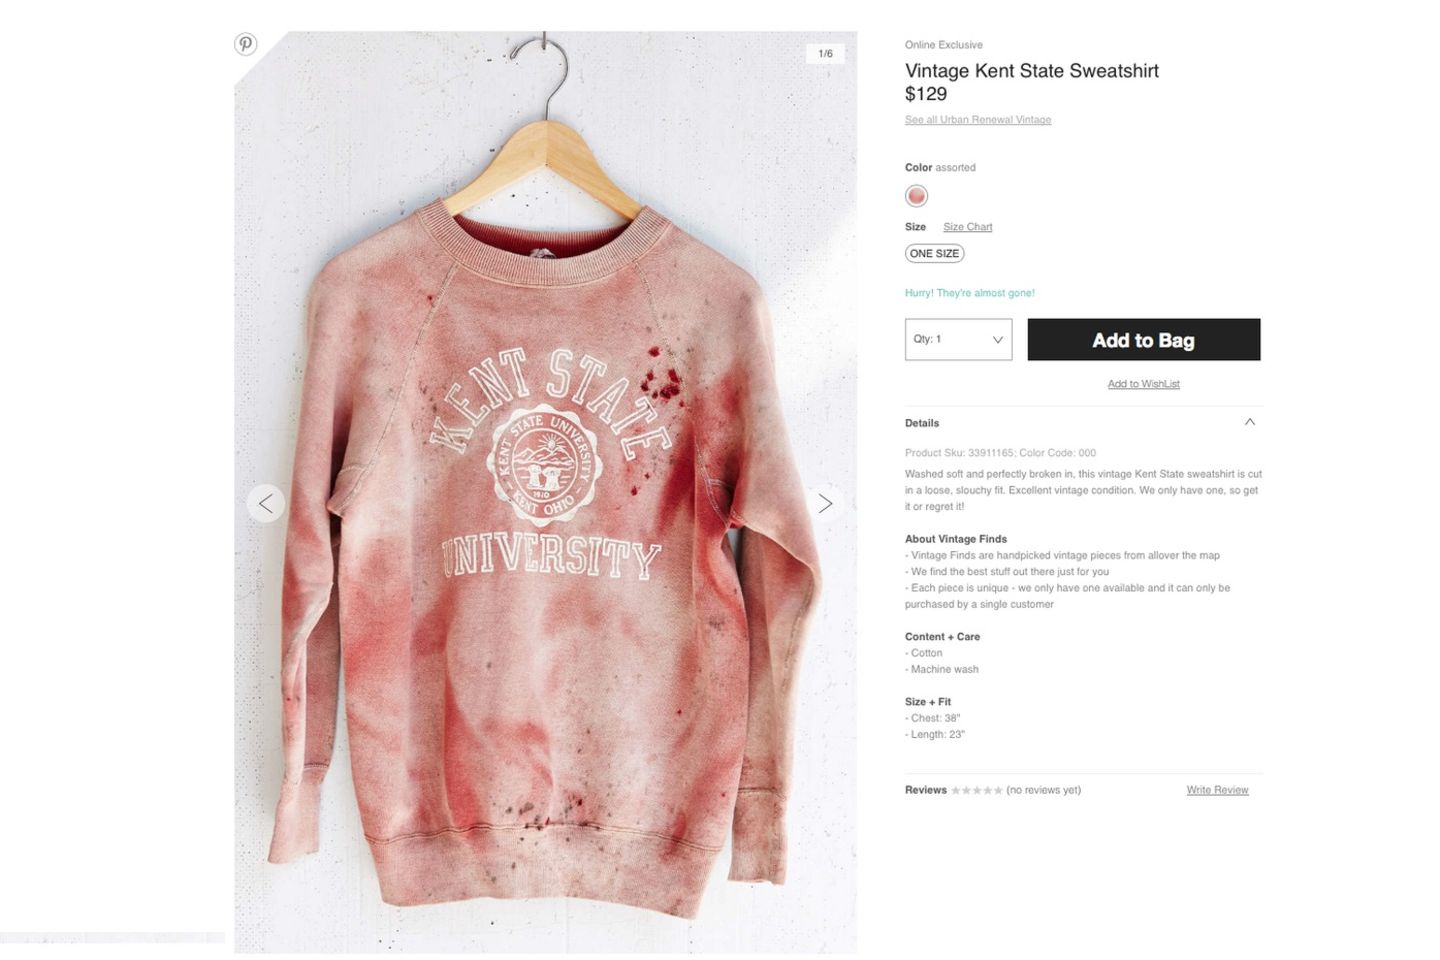 Geschmacklos! Urban Outfitters verkauft Massaker-Sweatshirt